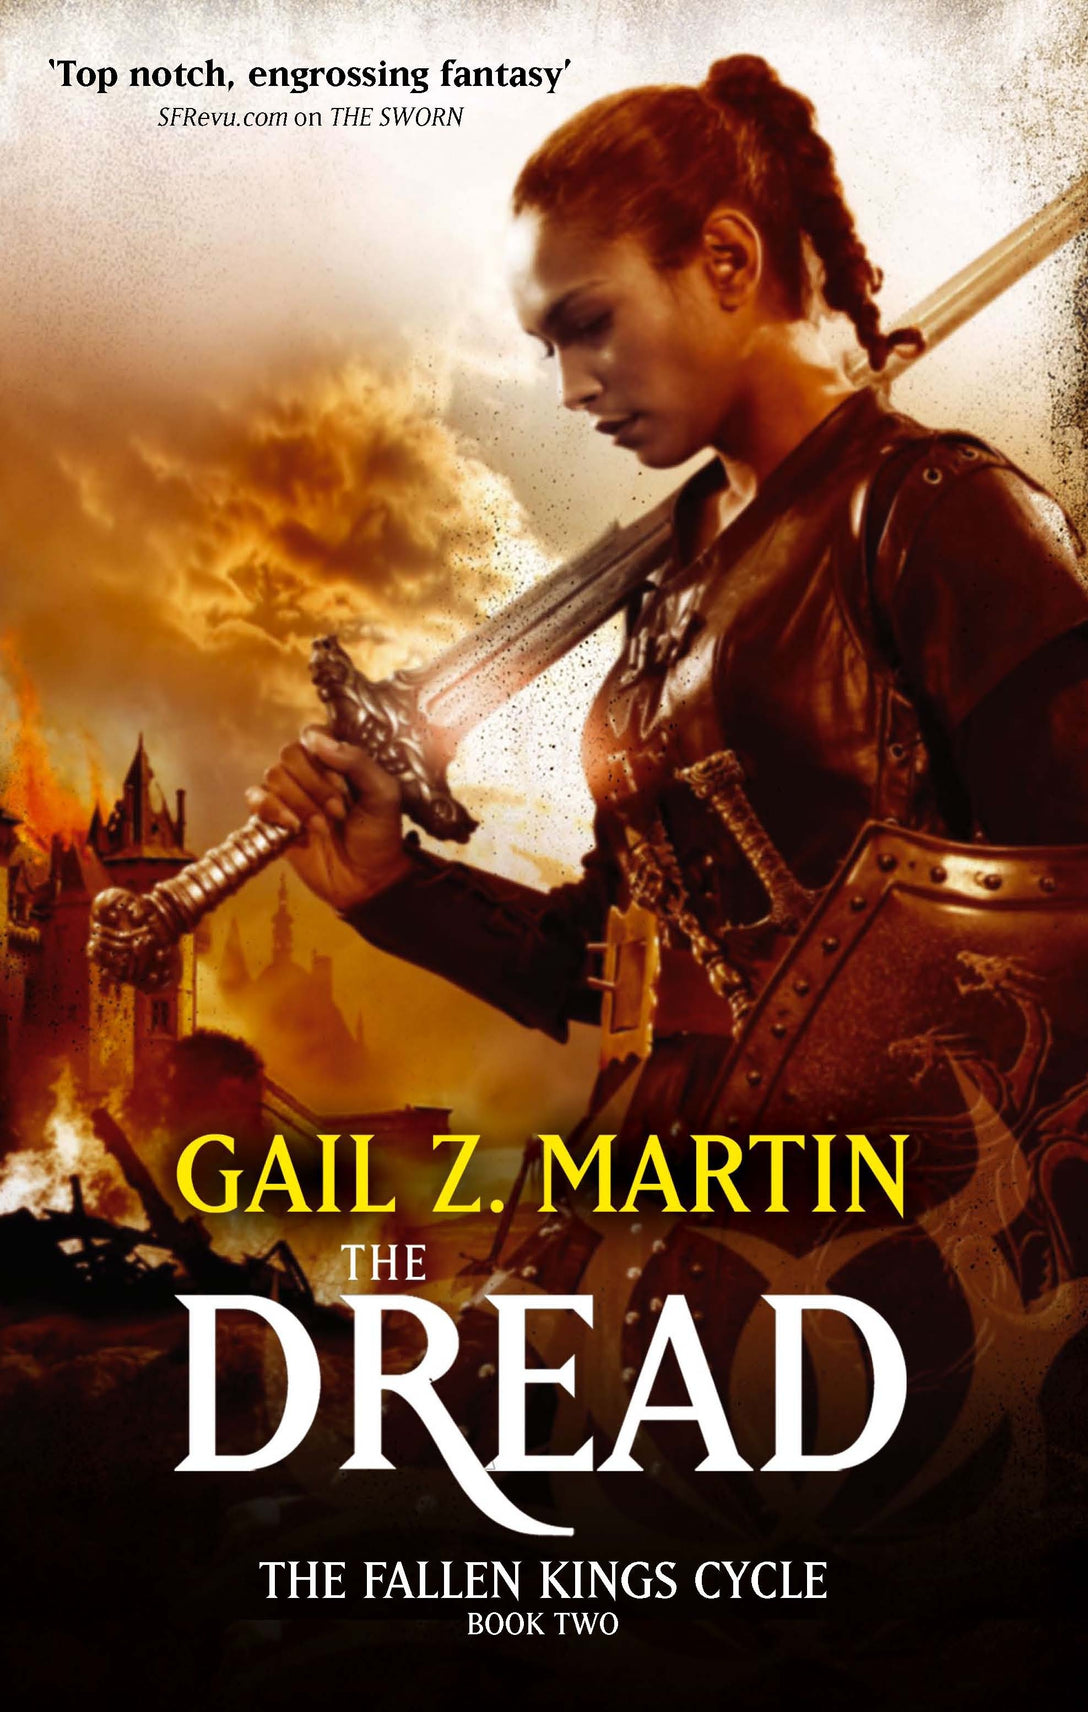 The Dread by Gail Z. Martin